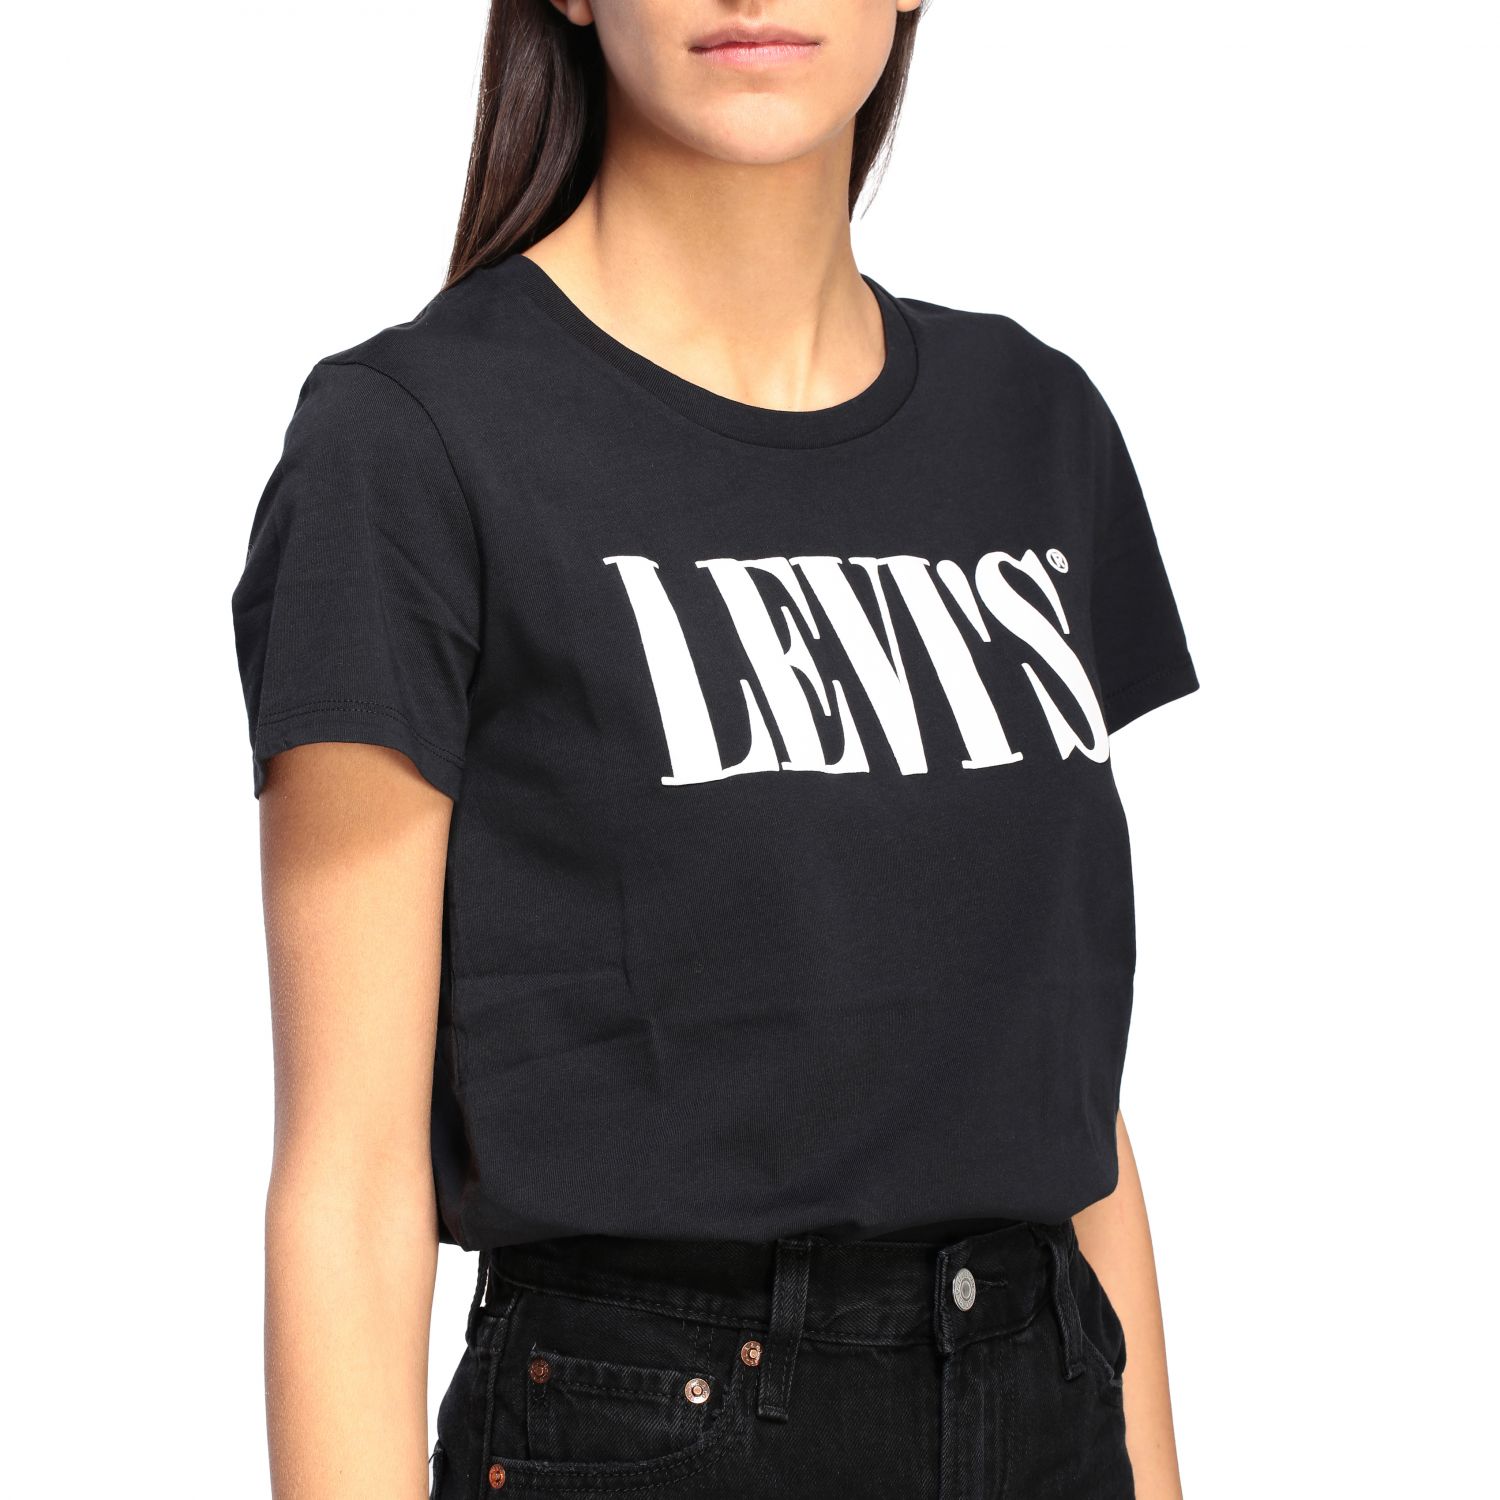 levis t shirts women's black